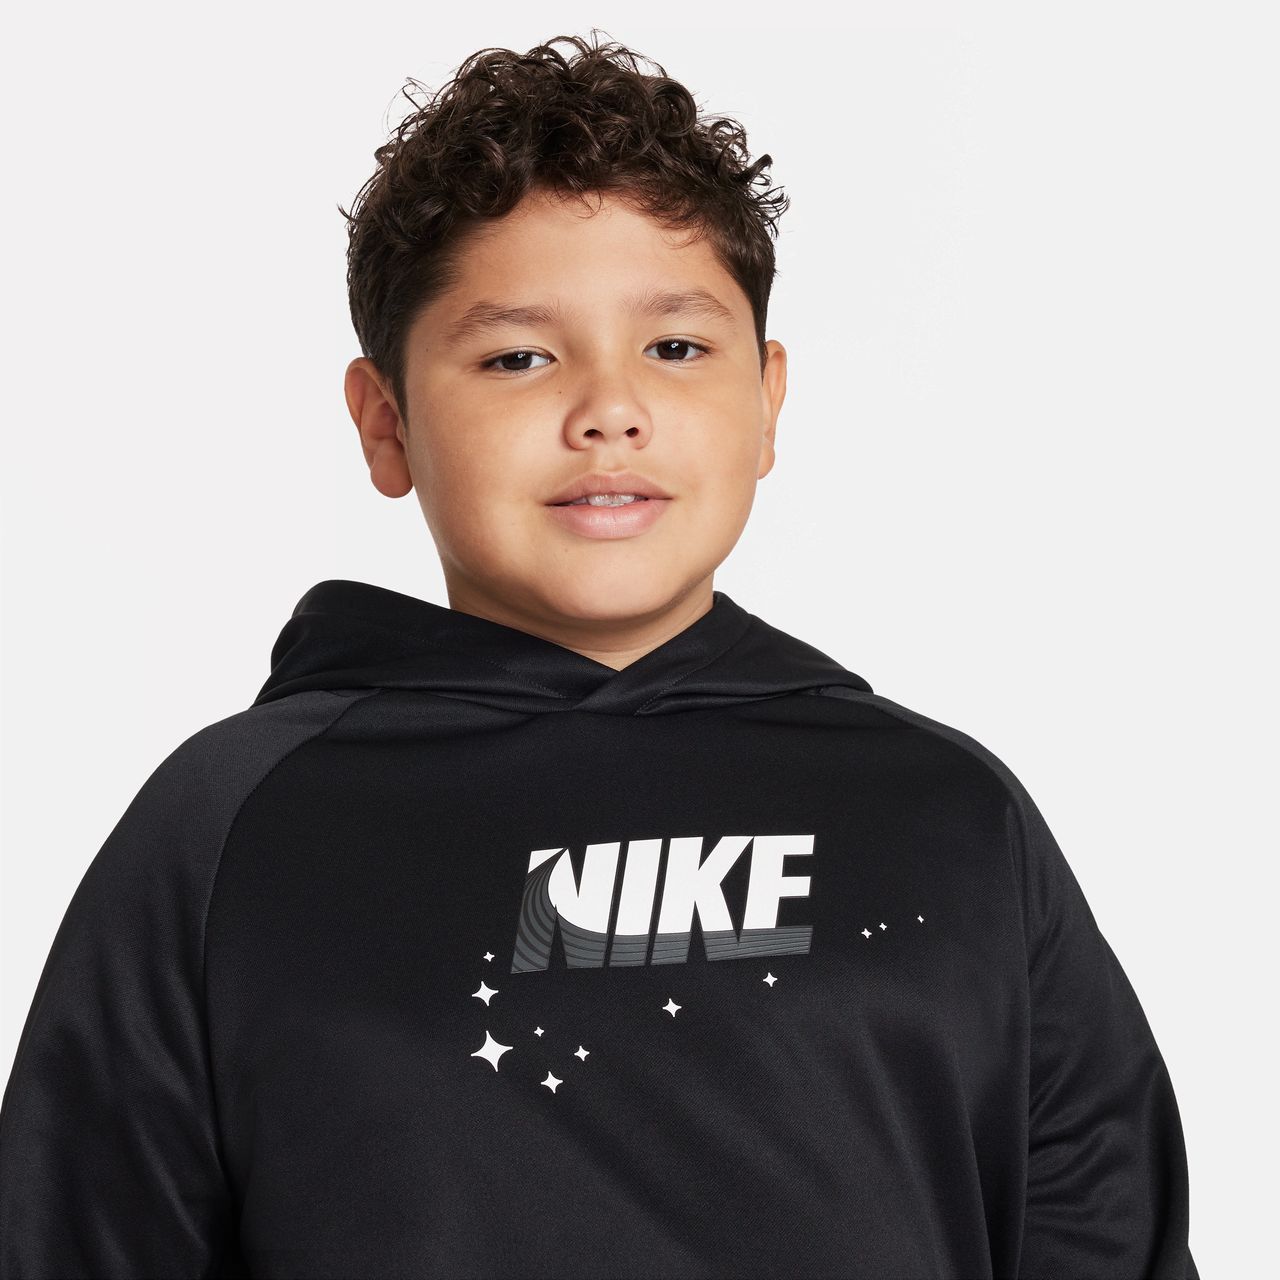 Nike Therma-FIT Trainings-Hoodie für ältere Kinder (Jungen) (erweiterte Größe) - Schwarz